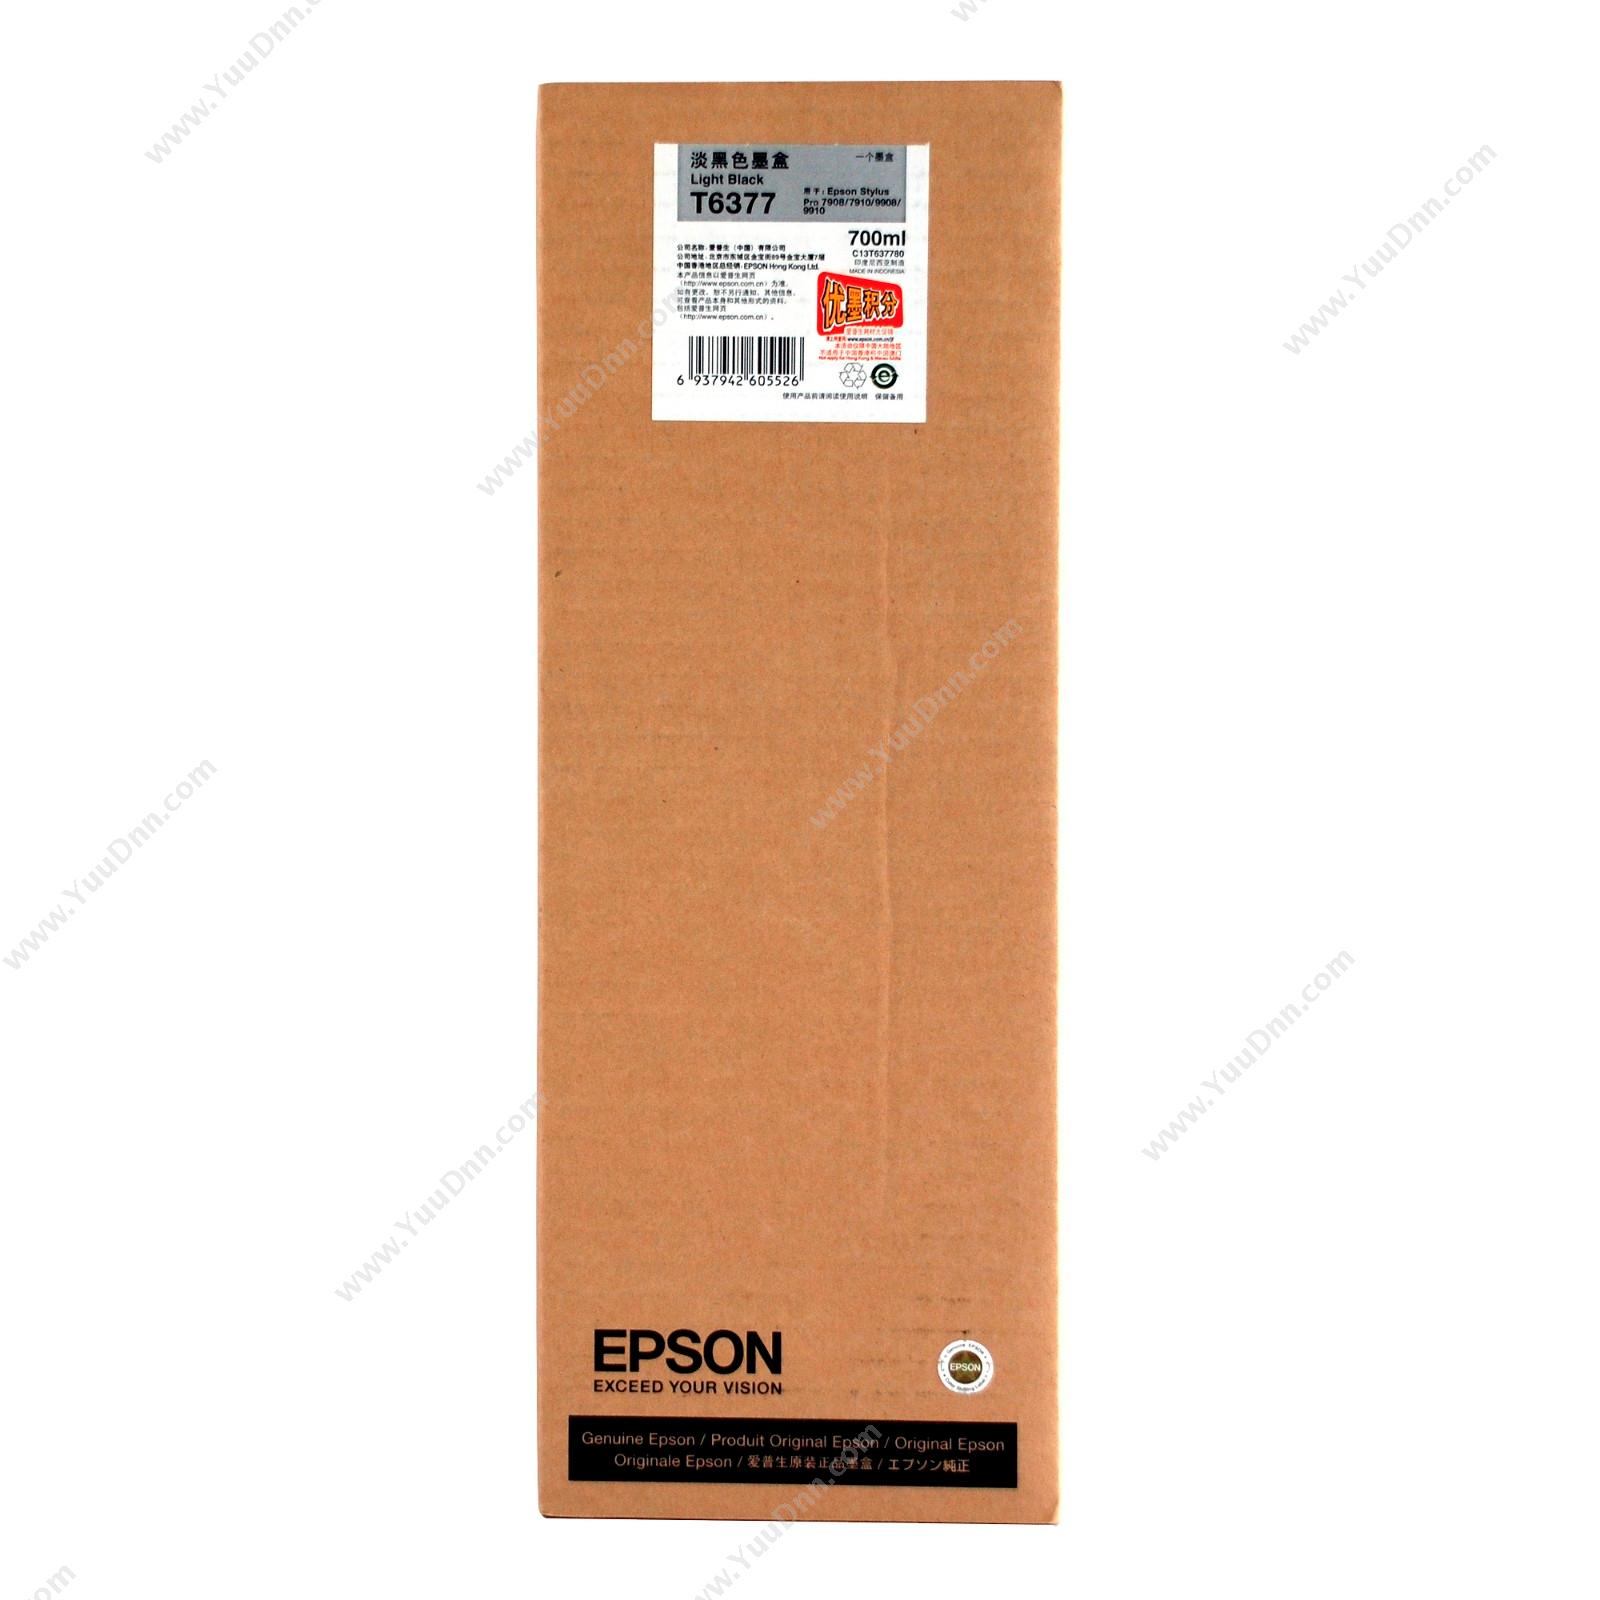 爱普生 EpsonPro9910浅黑墨700ml（C13T637780）墨盒